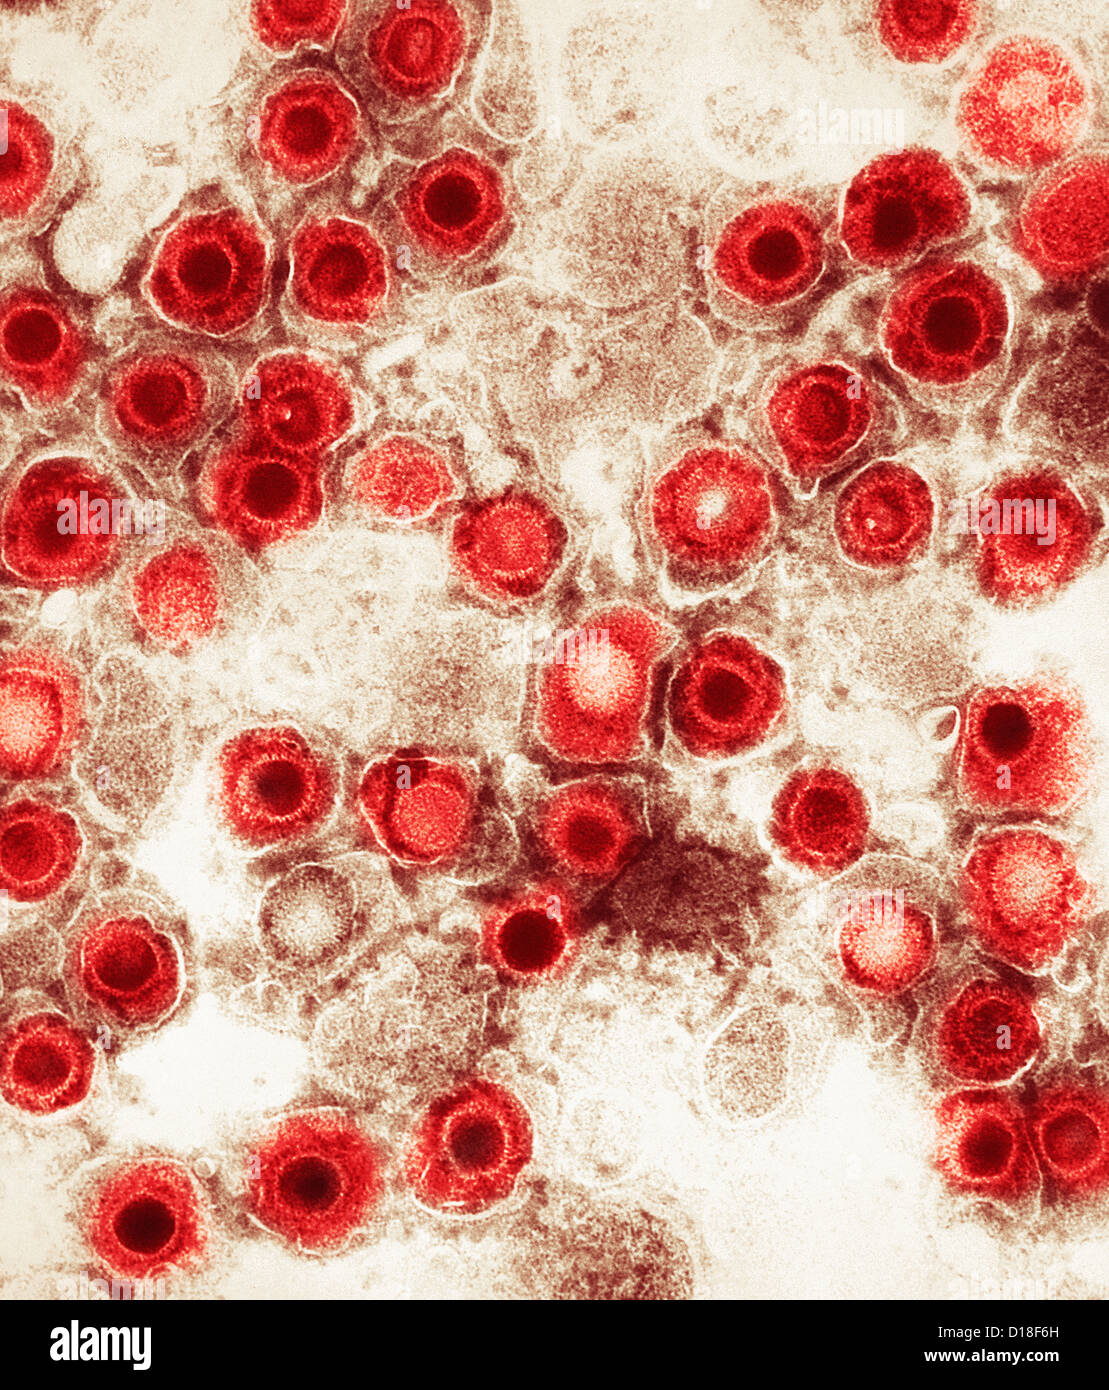 Micrografía de electrones, herpes virus Foto de stock